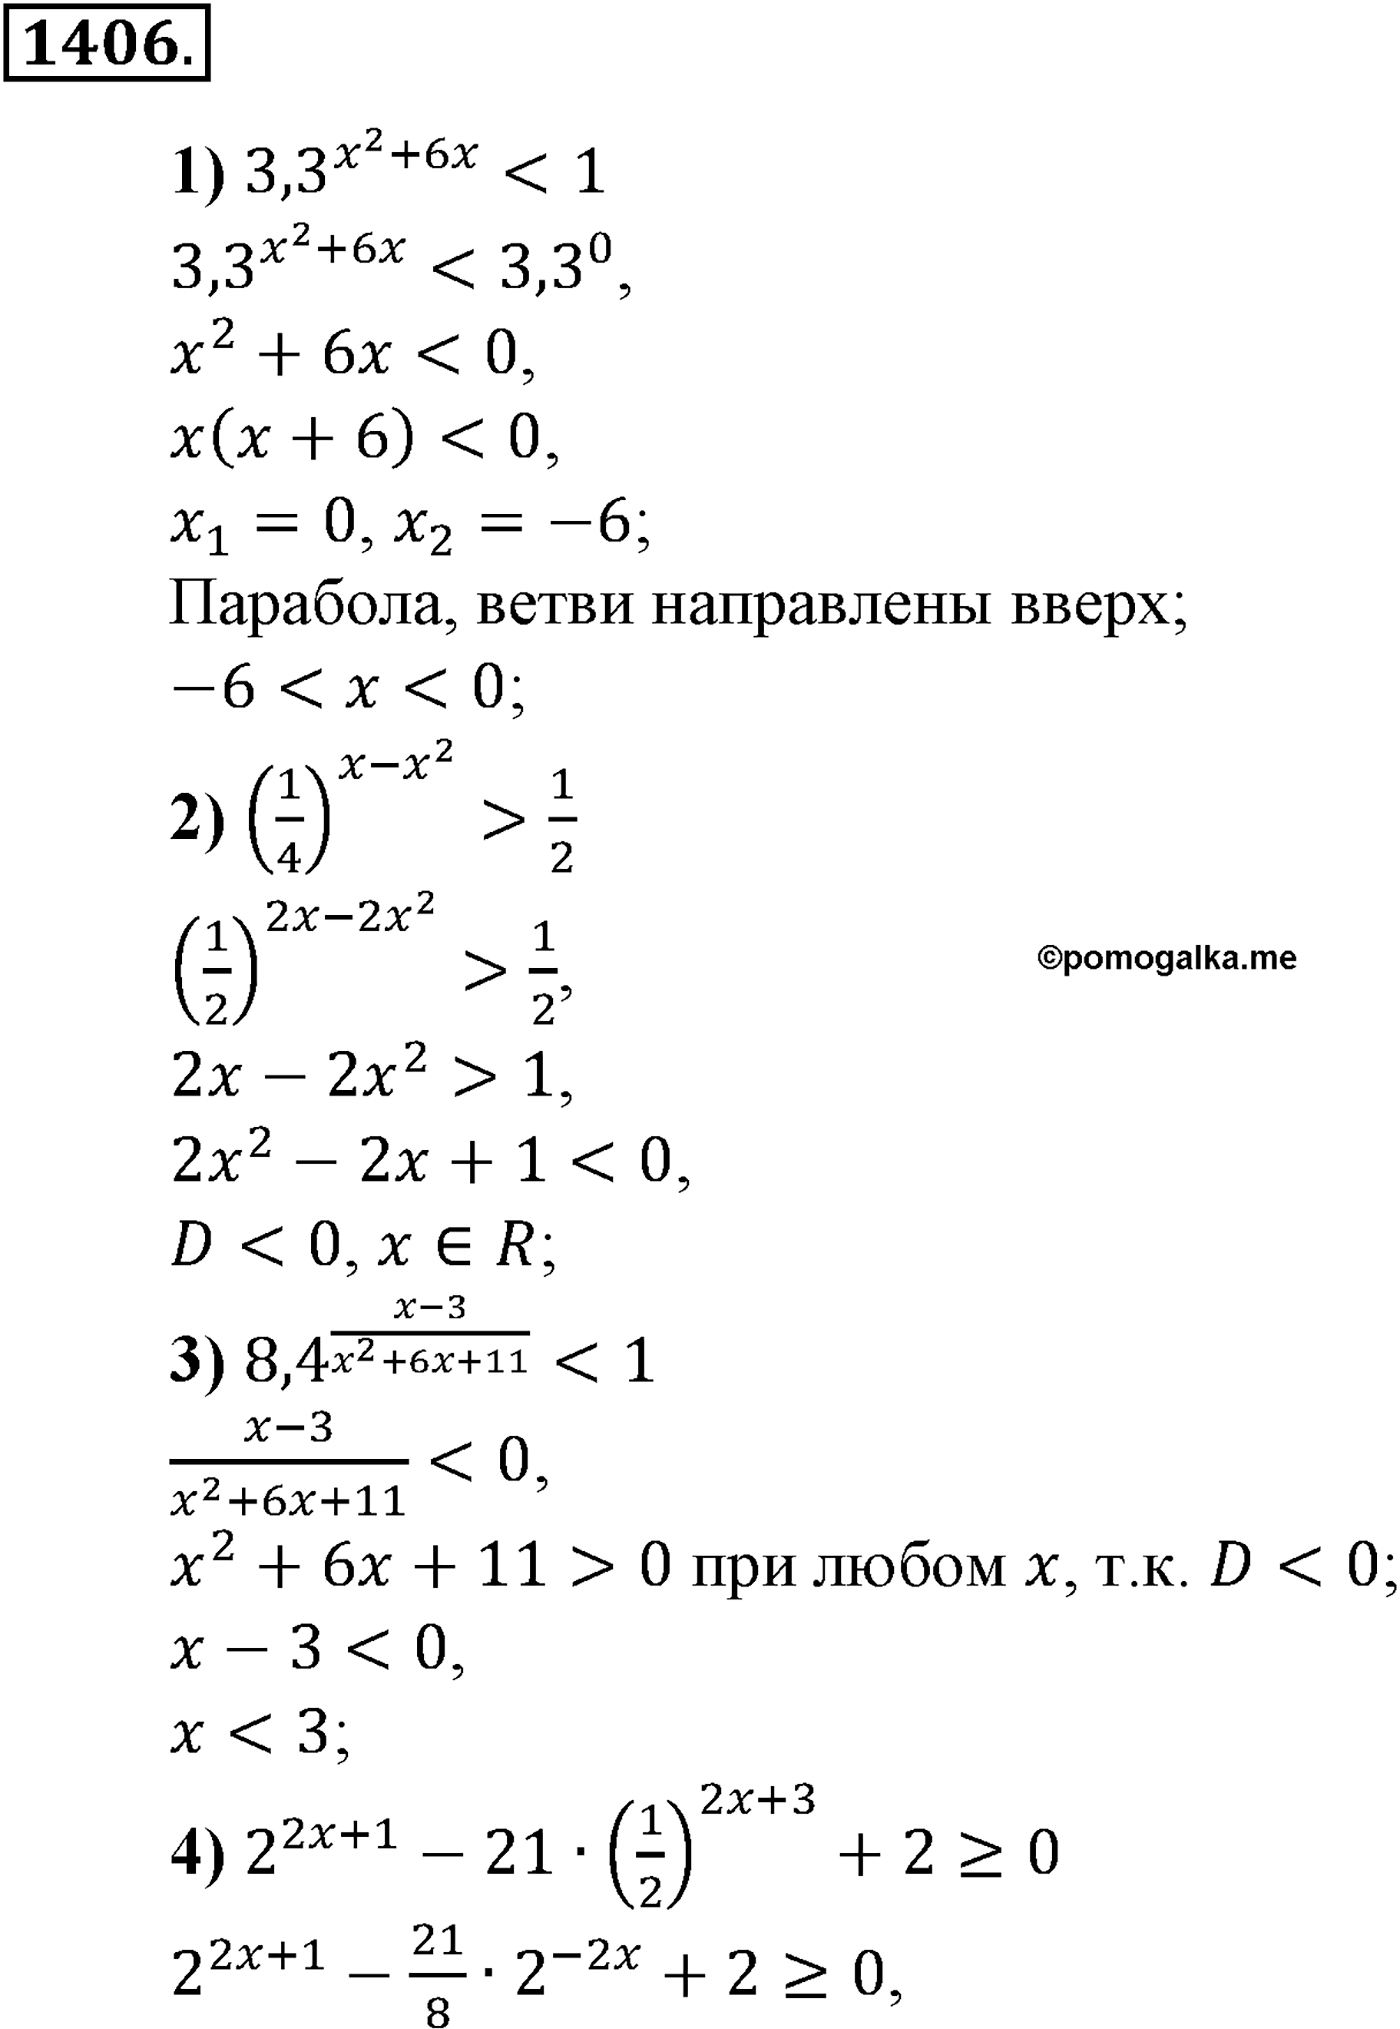 разбор задачи №1406 по алгебре за 10-11 класс из учебника Алимова, Колягина